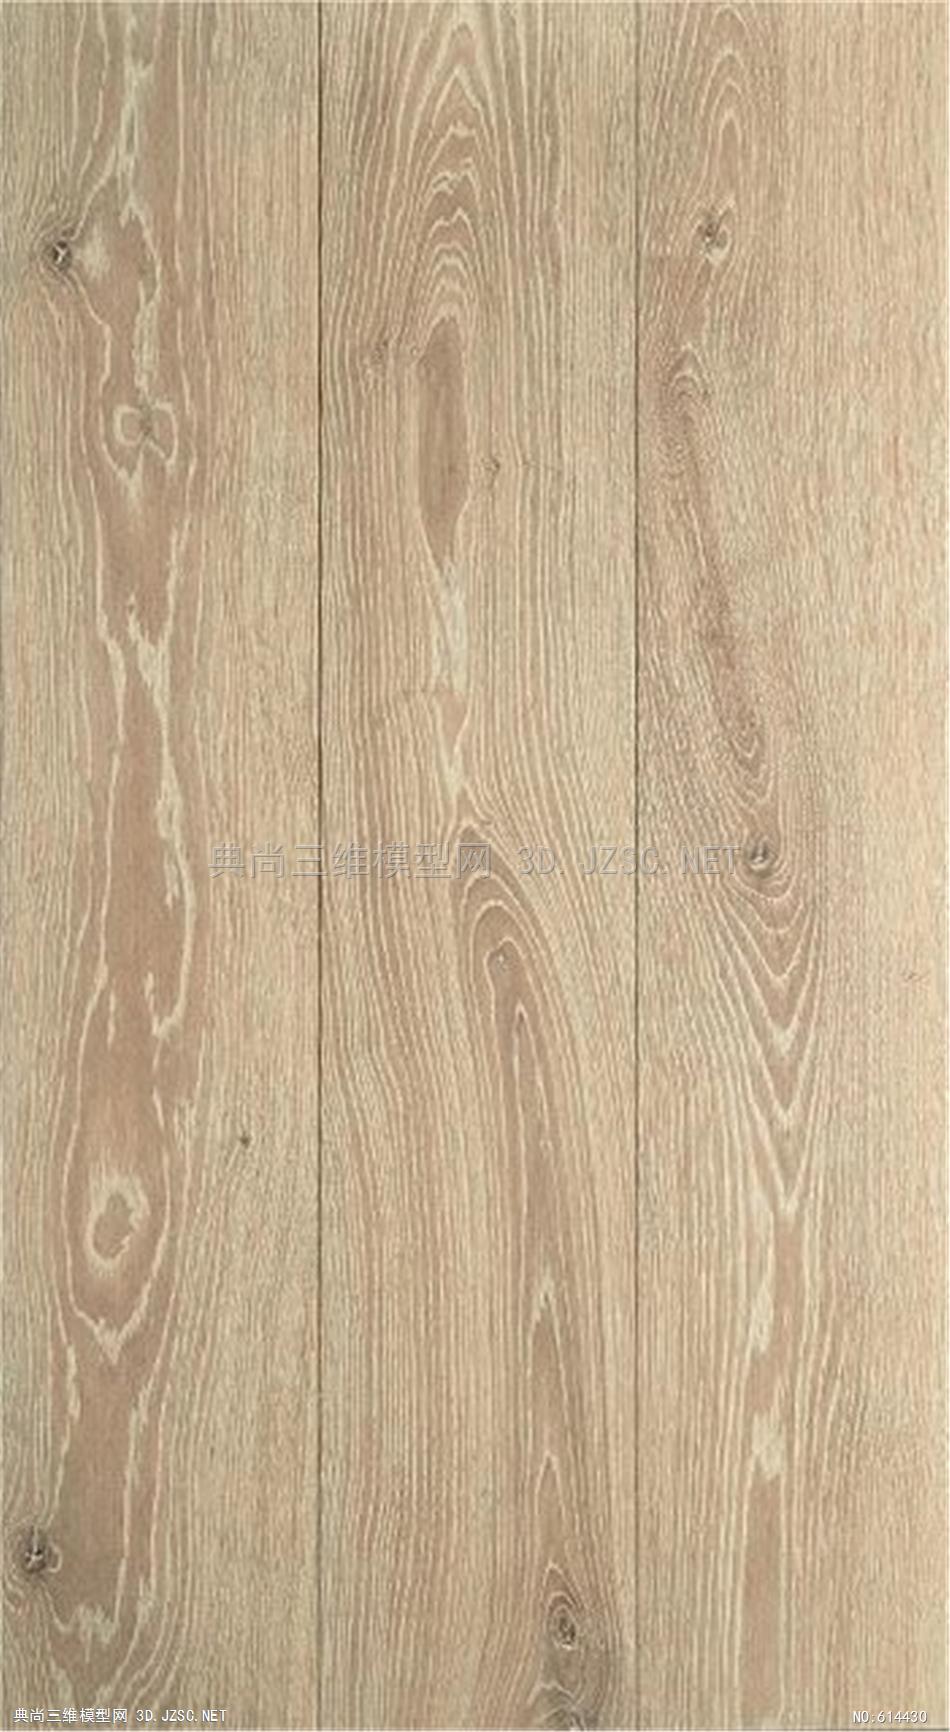 木饰面 木纹 木材  高清材质贴图 (298)